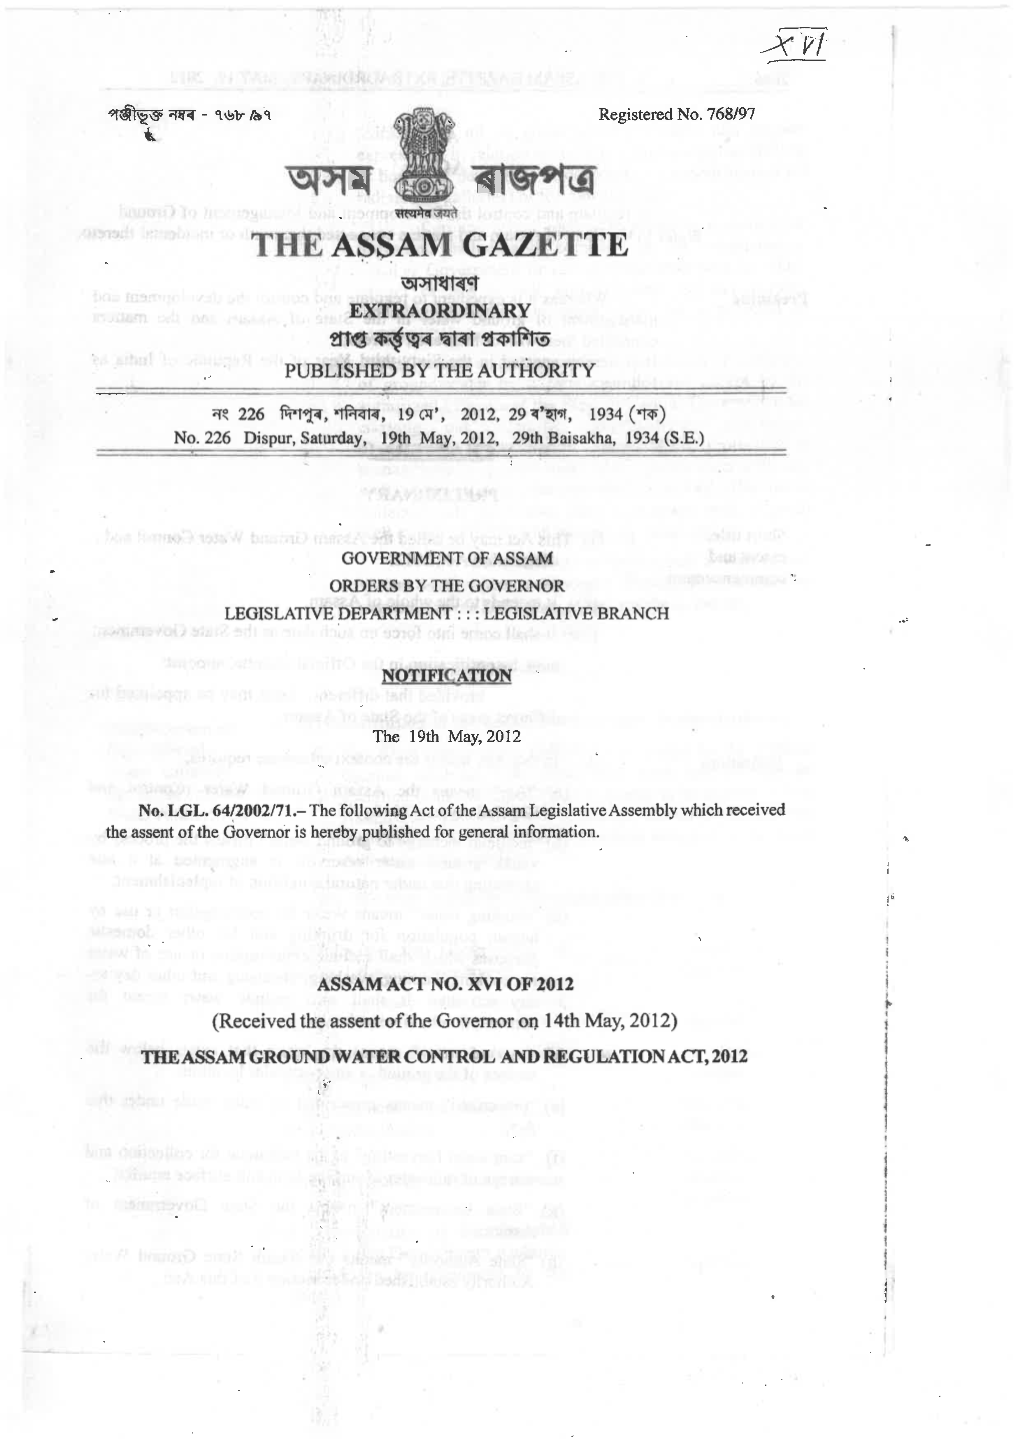 The Assam Gazette